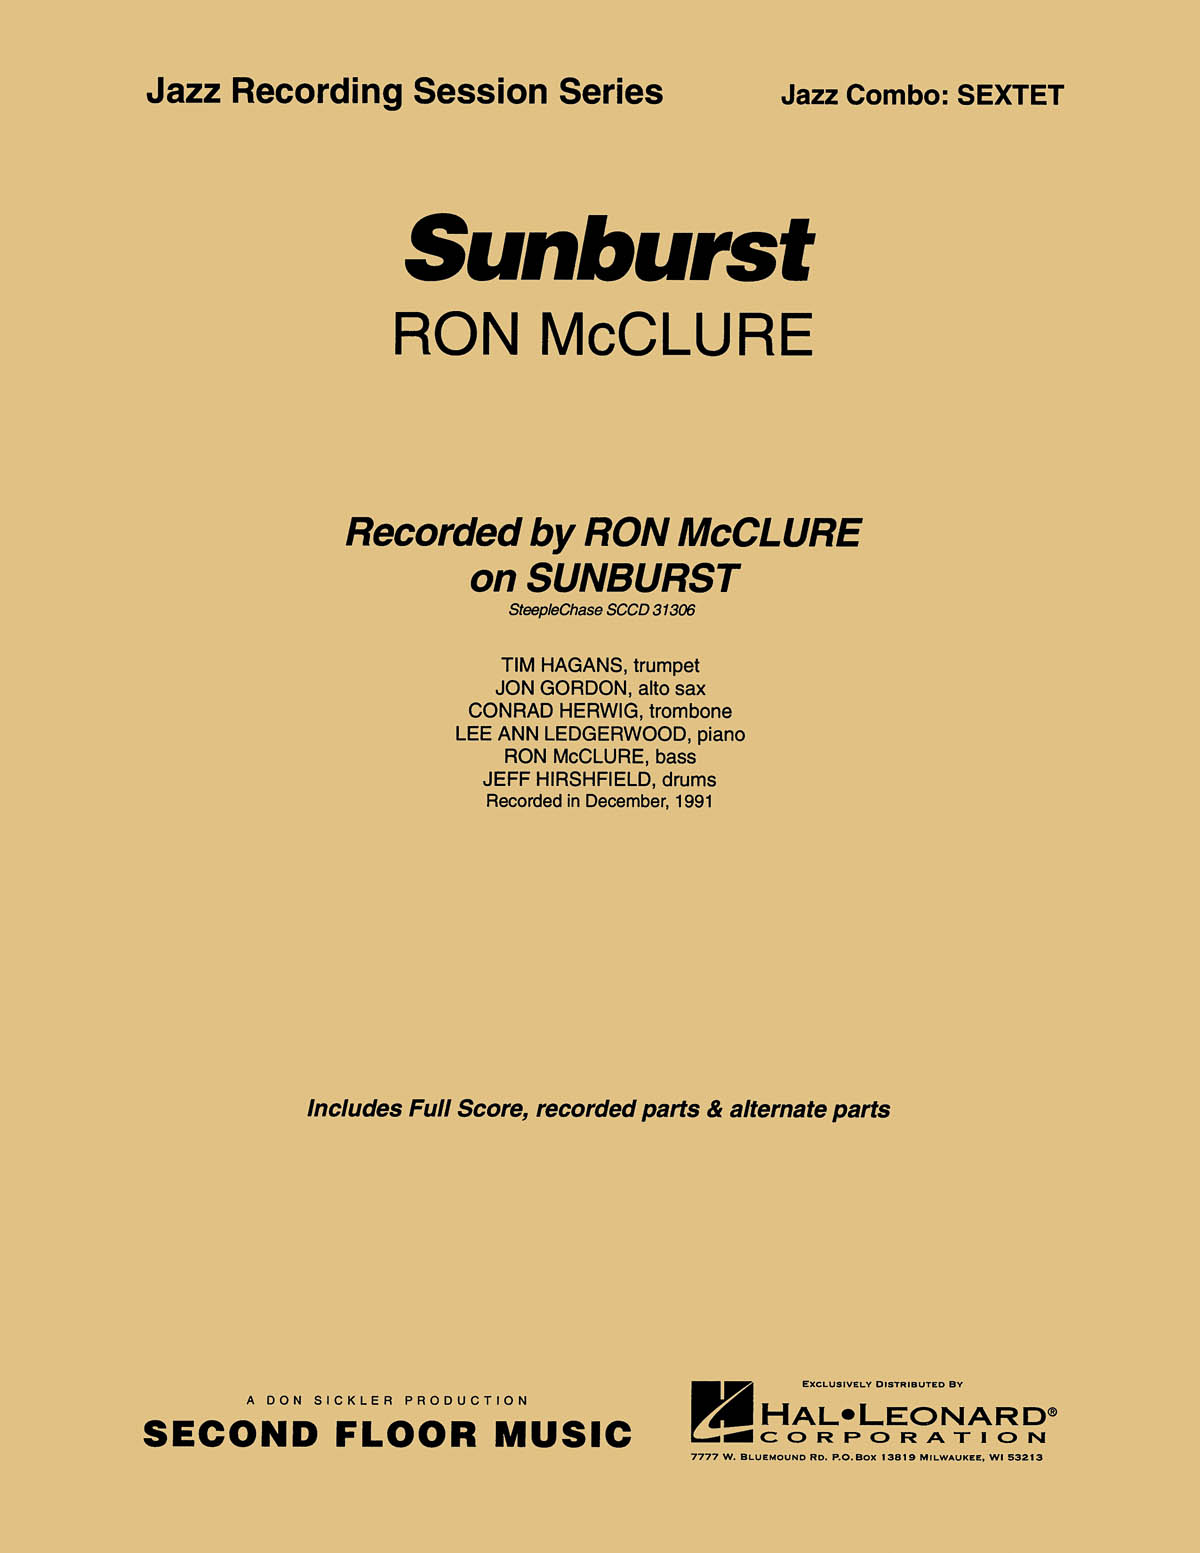 Sunburst